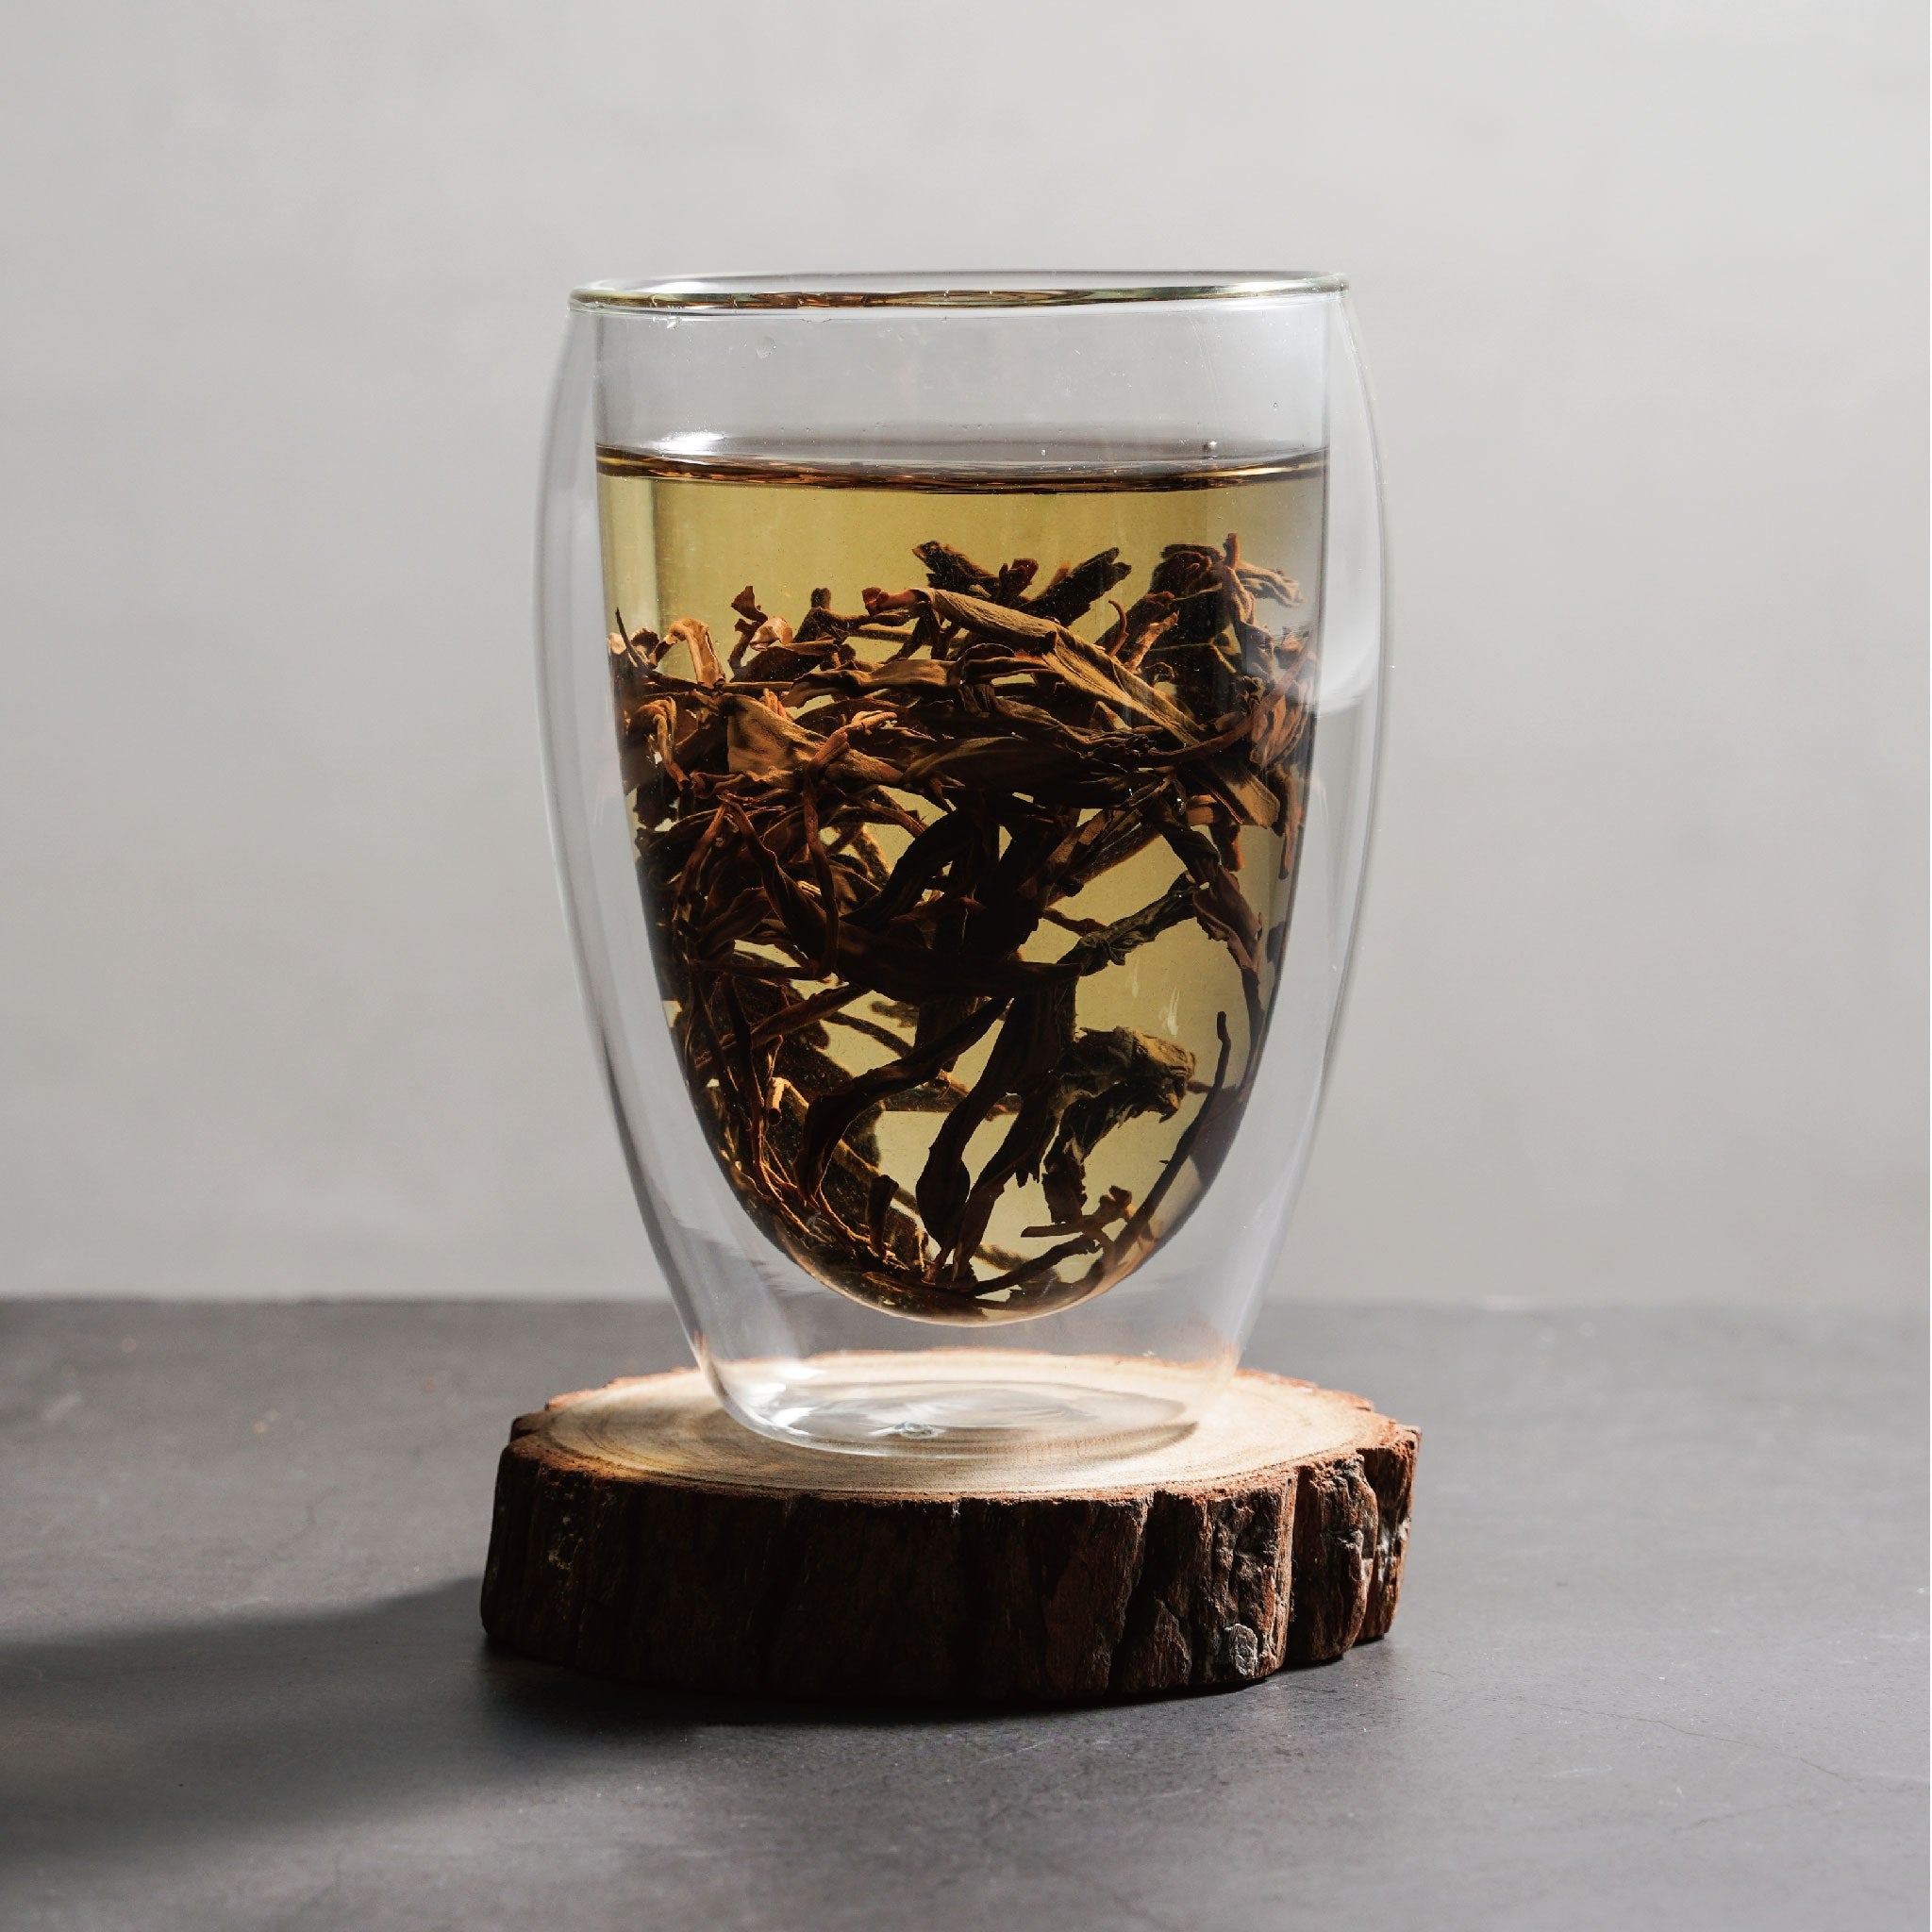 mi xiang honey fragrance black tea wet tea leaves floating in cup